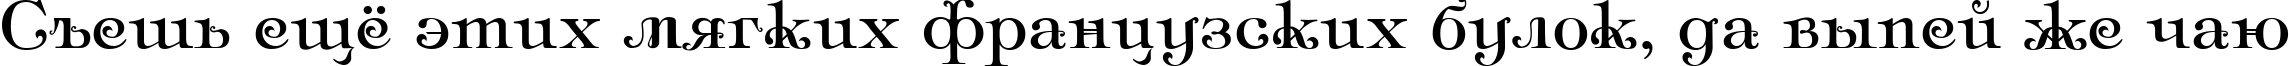 Пример написания шрифтом Ampir Deco текста на русском